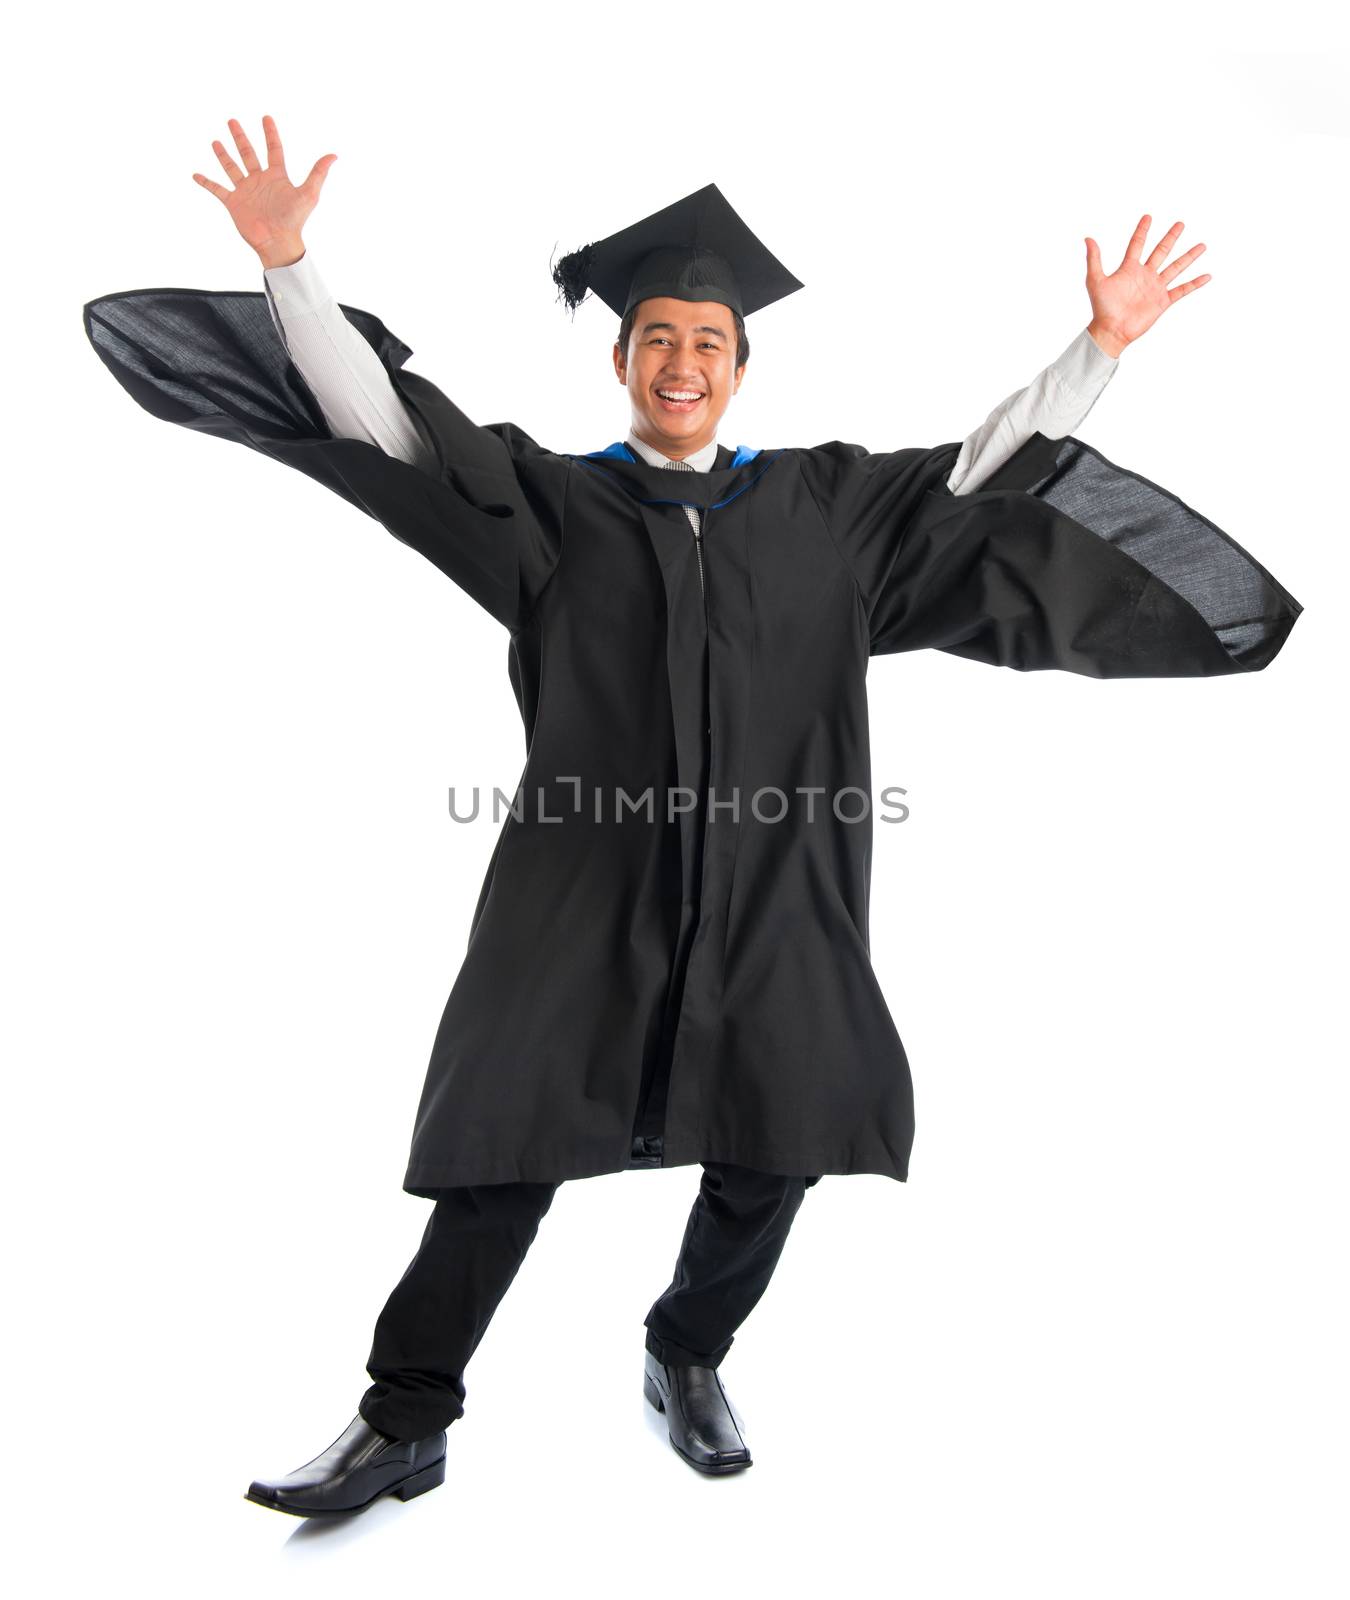 University student graduation jumping by szefei